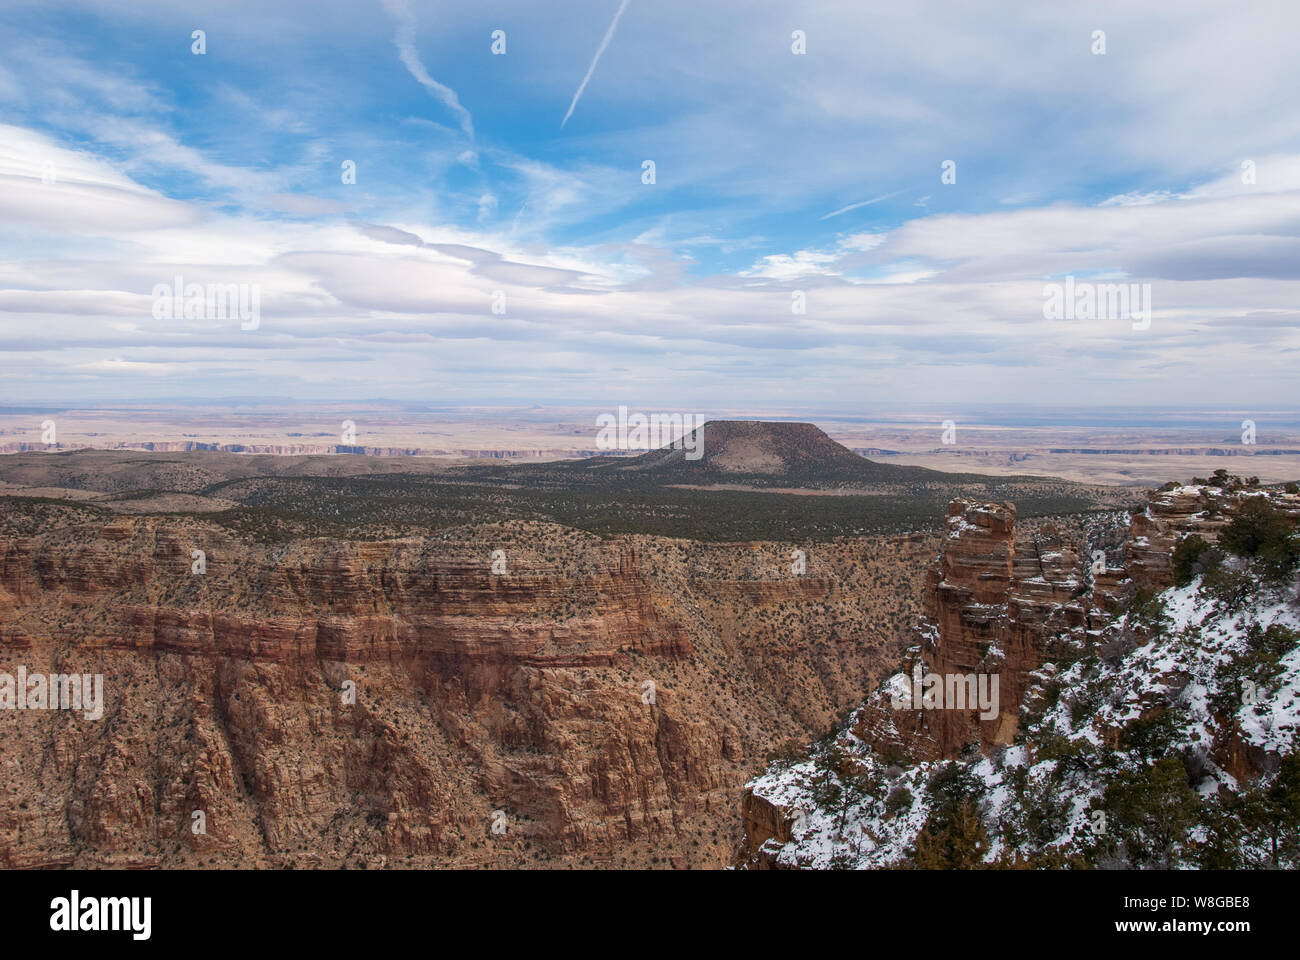 L'heure d'hiver dans le Grand canyon quand la neige est tombée et montre la profondeur de la beauté de l'une des sept merveilles du monde. Banque D'Images